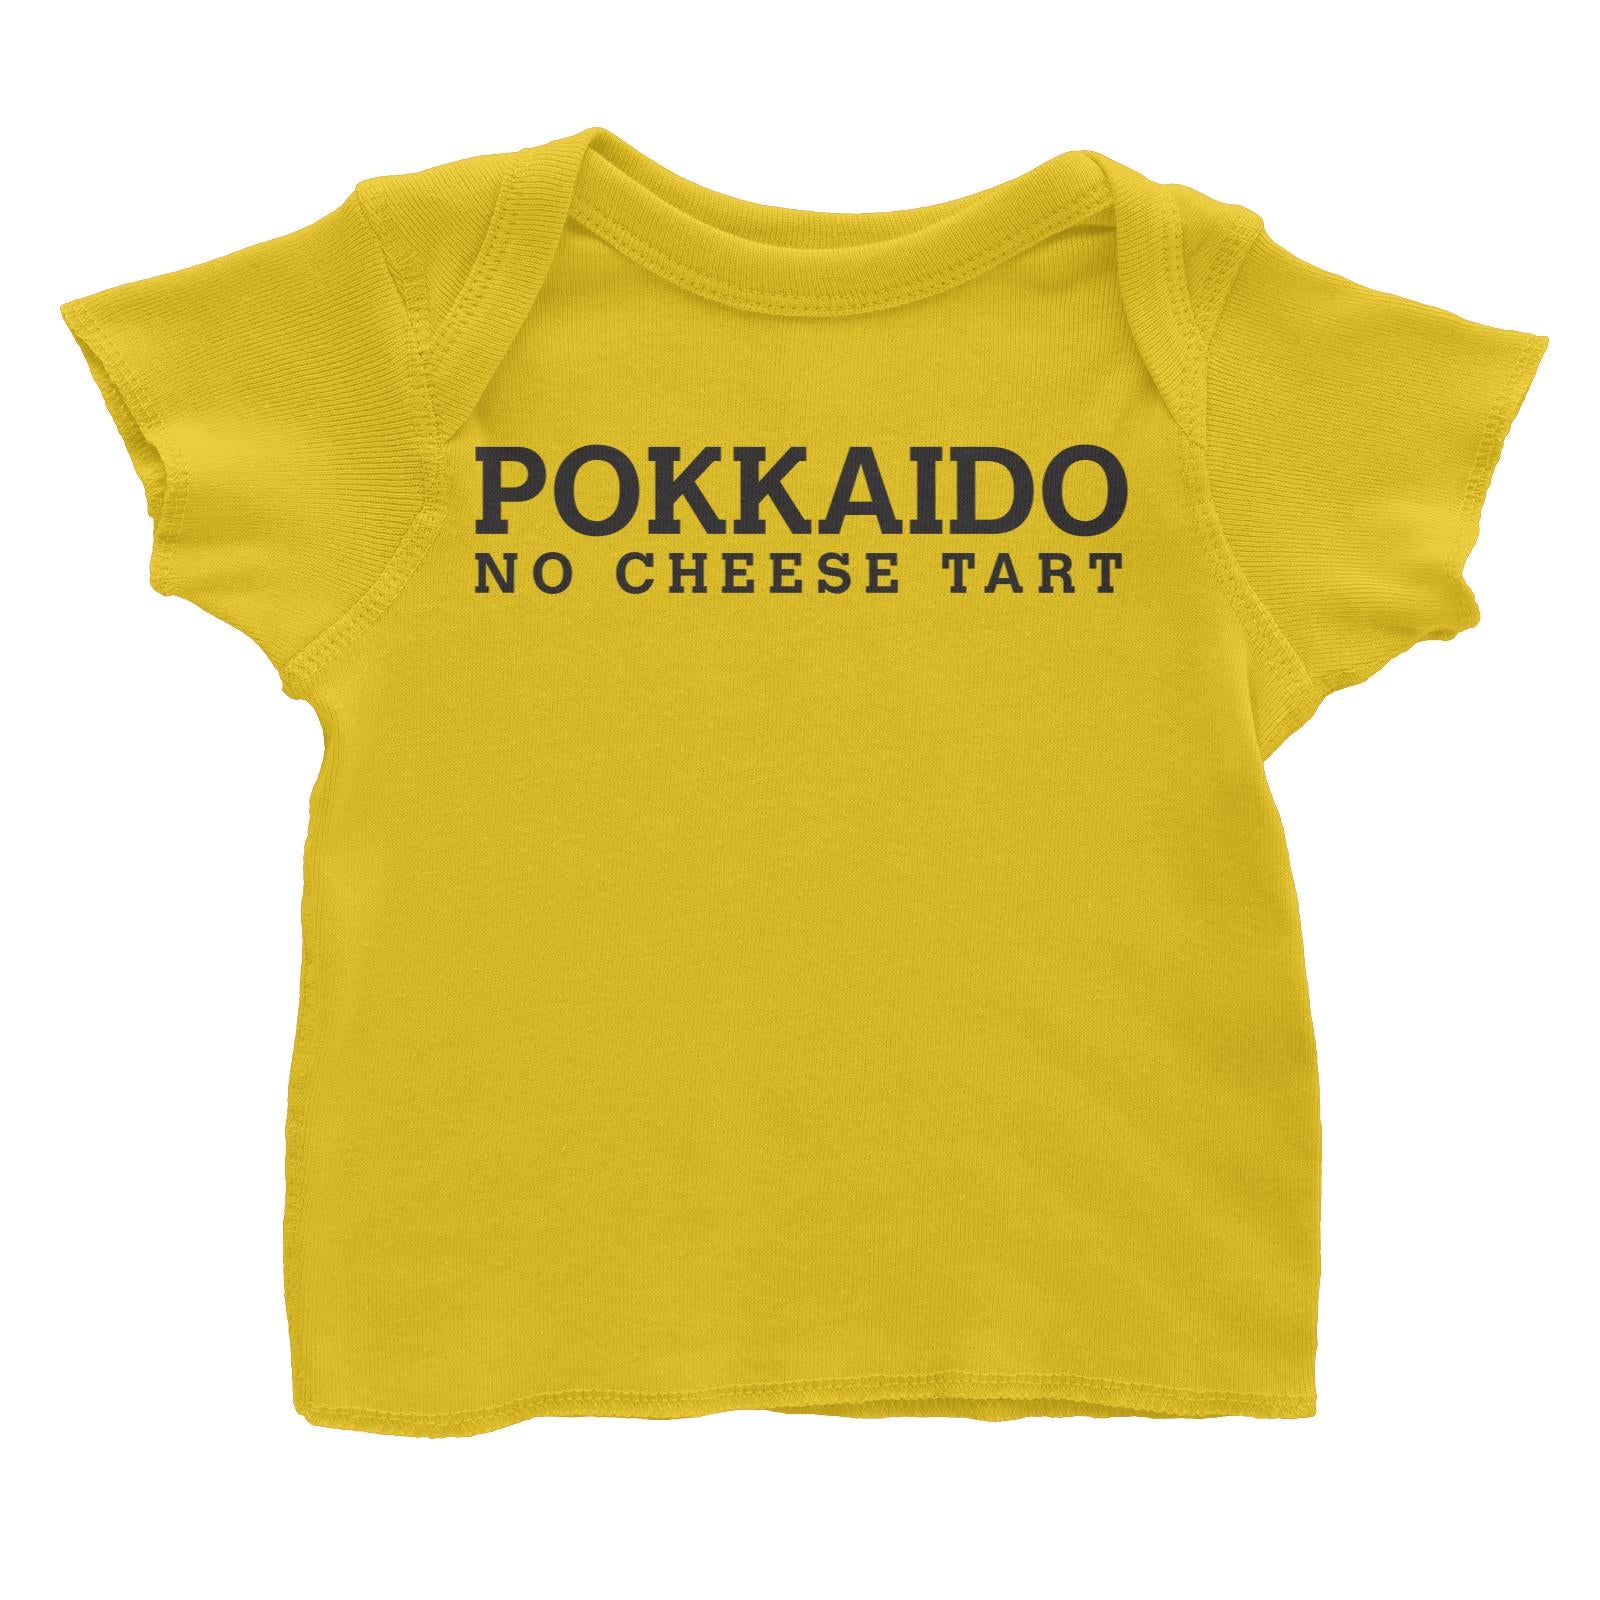 Slang Statement Pokkaido No Cheese Tart Baby T-Shirt